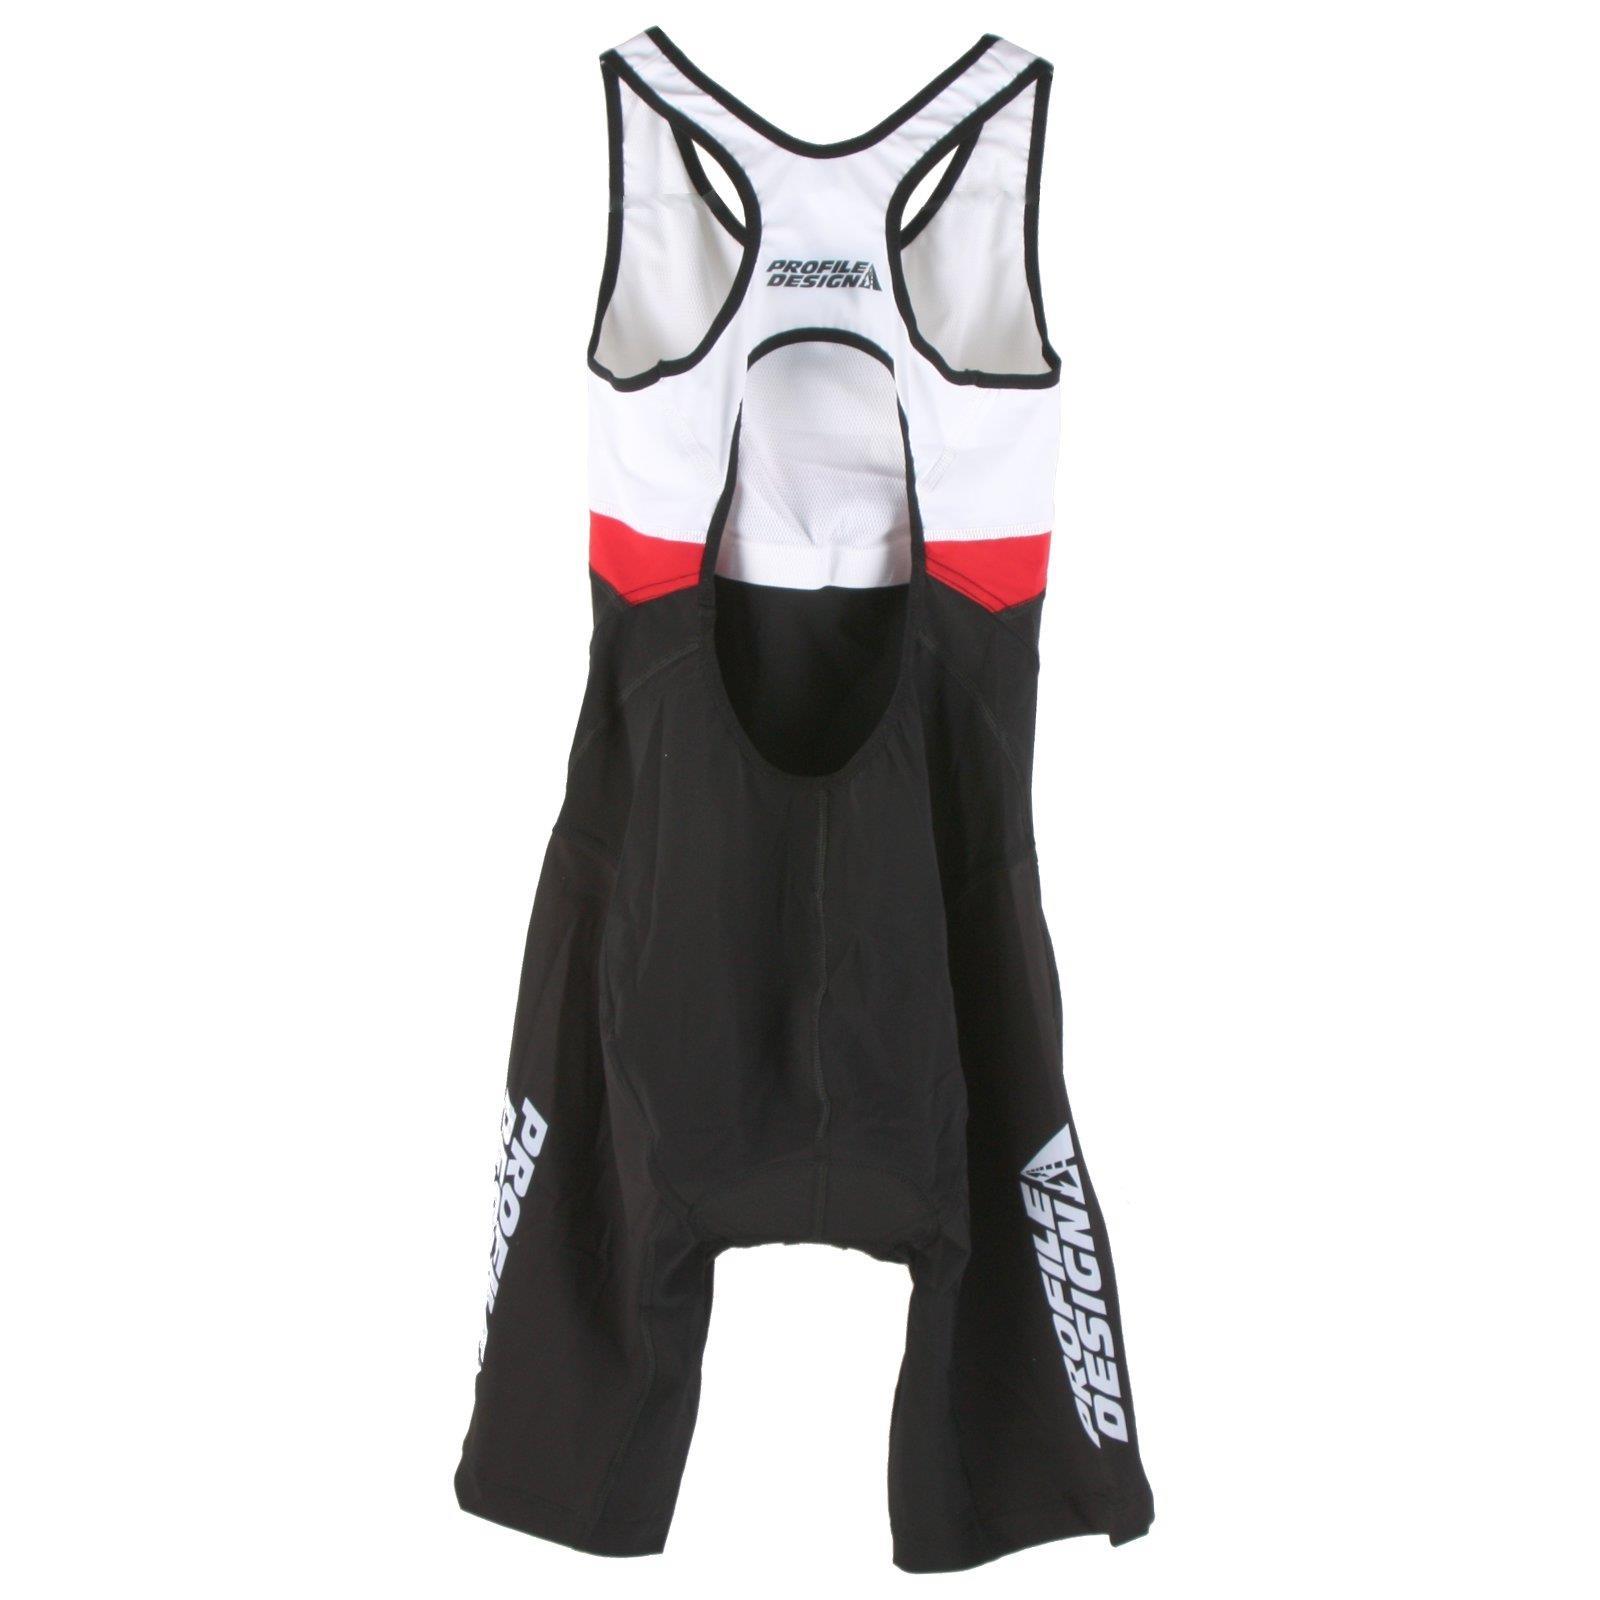 Profile Design Tri ID Suit Damen Triathlon Body Einteiler Fahrrad BH Polster